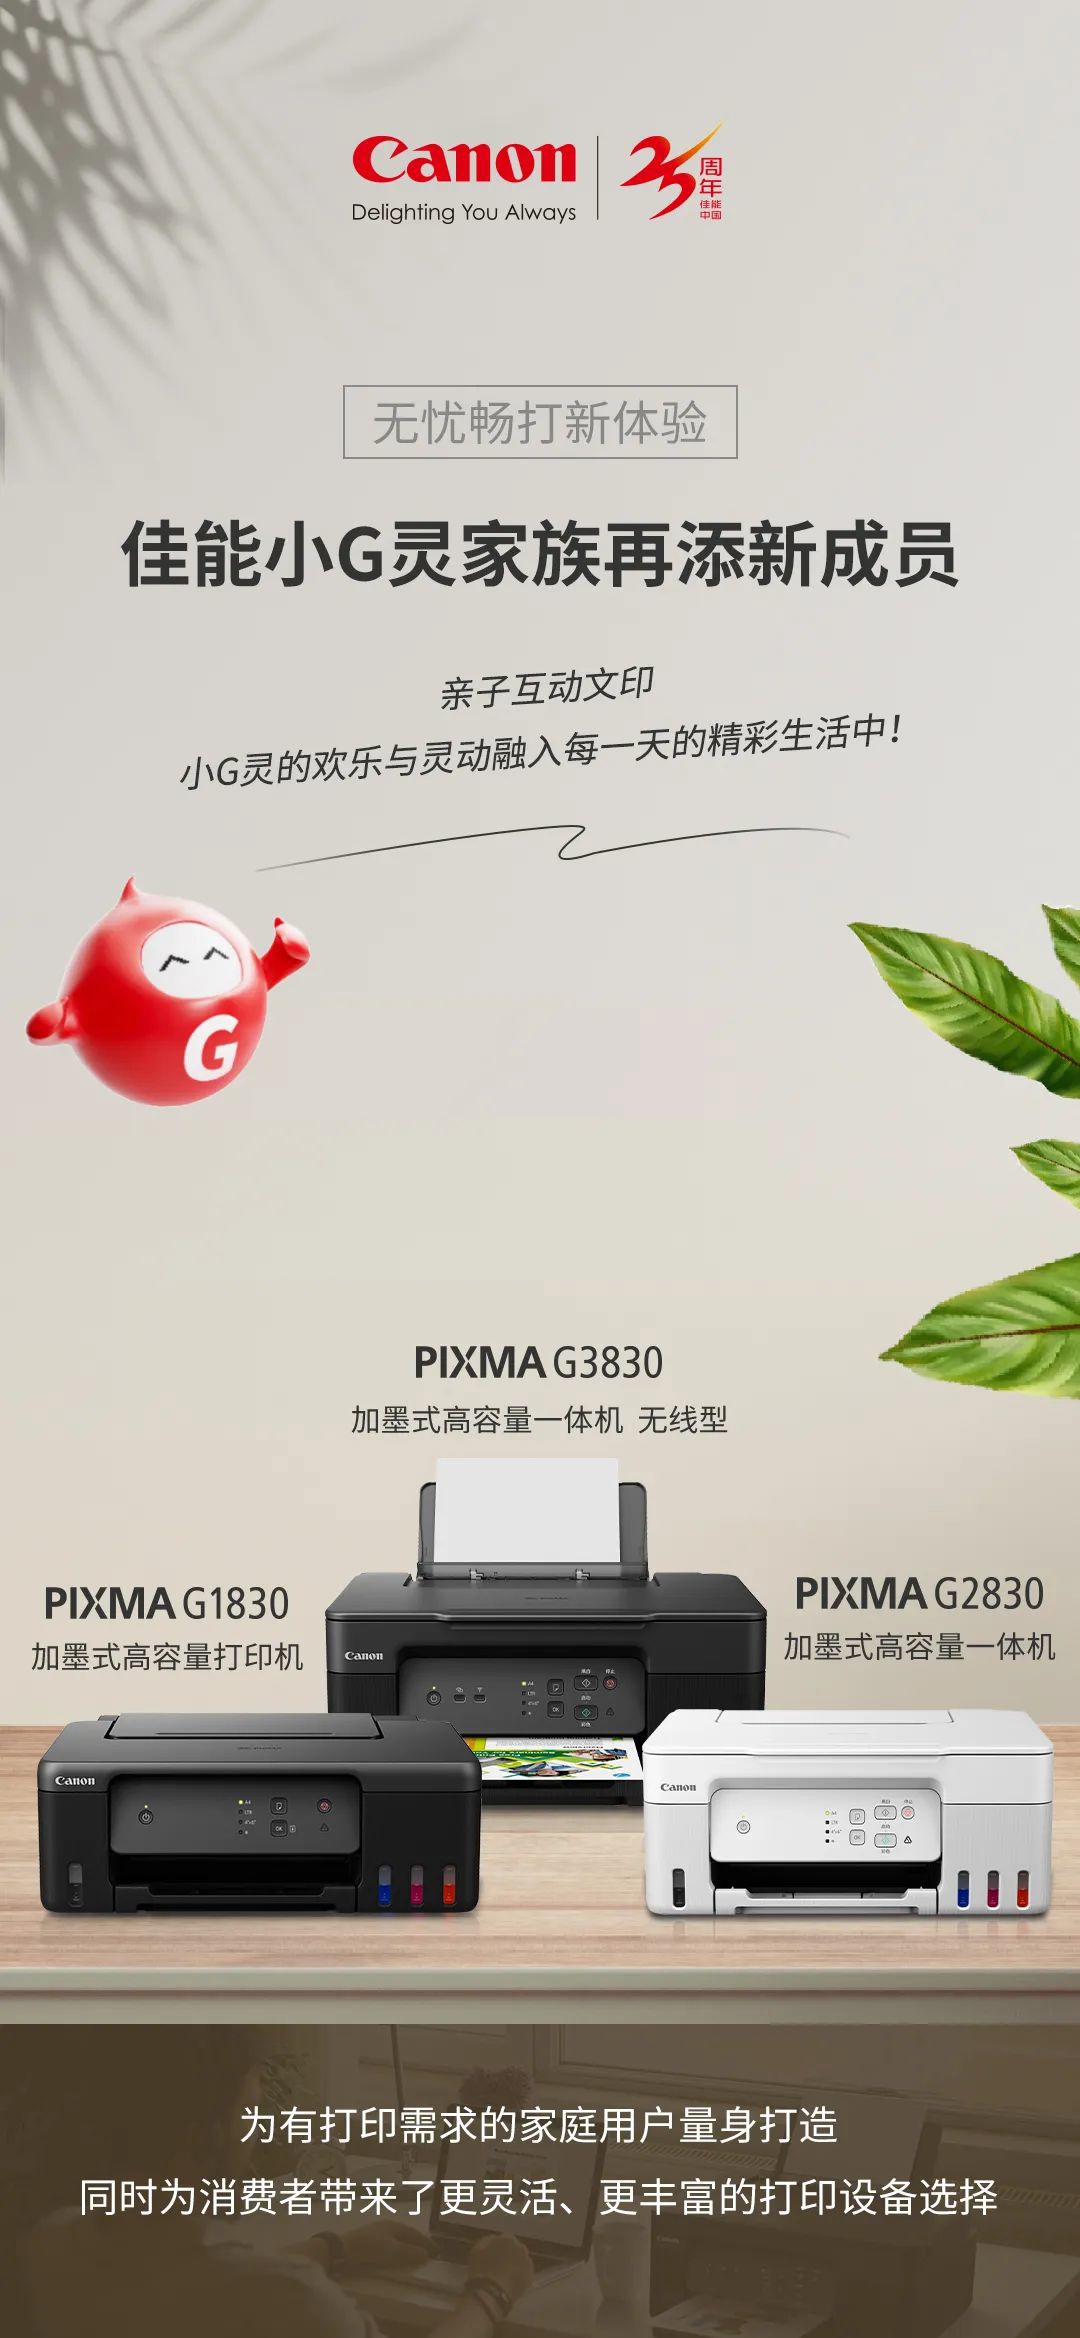 佳能推出加墨式高容量一体机 PIXMA G3830、G2830 及打印机 G1830